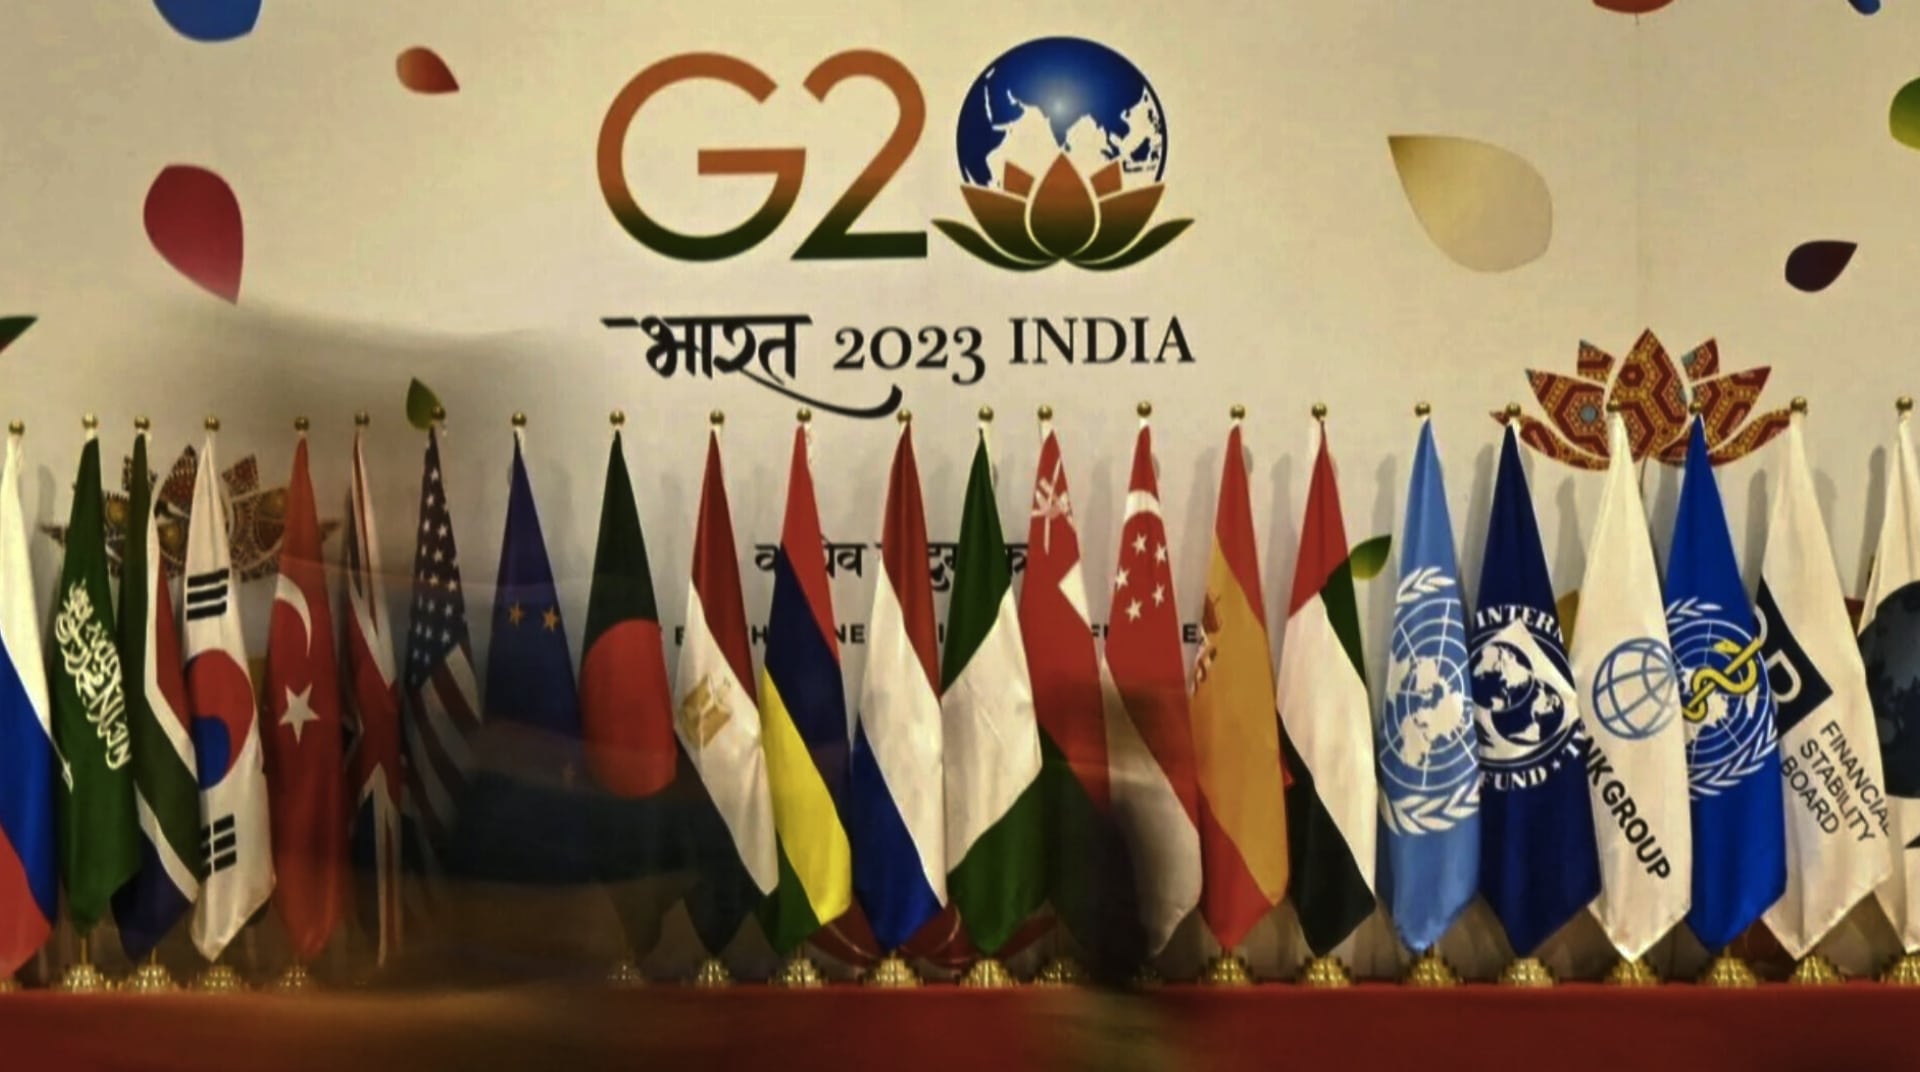 g20 summit 20203